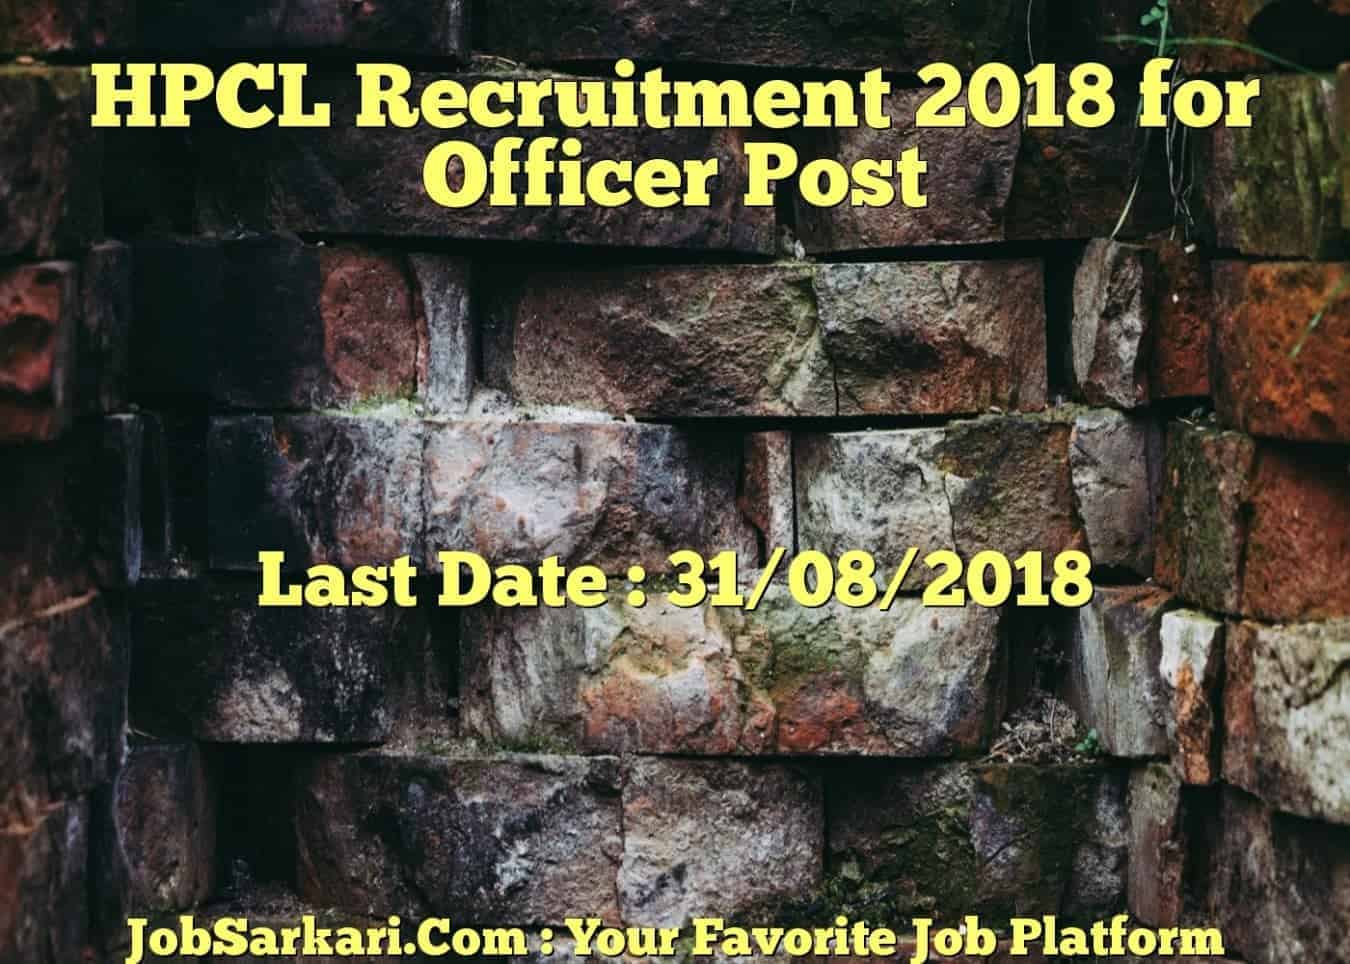 HPCL Recruitment 2018 for Officer Post